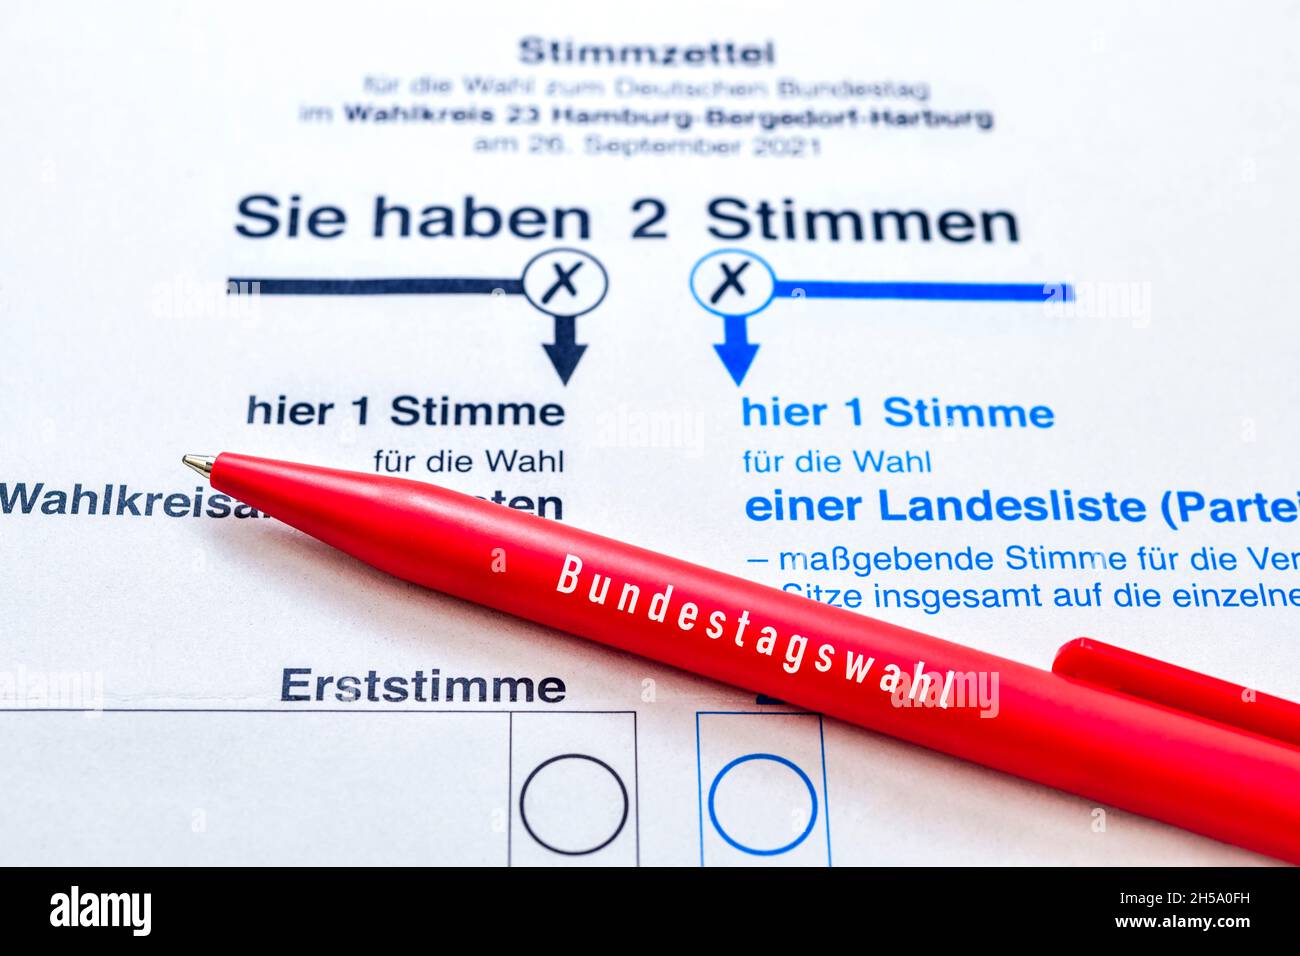 Stimmzettel zur Bundestagswahl 2021 mit Kugelschreiber Foto Stock